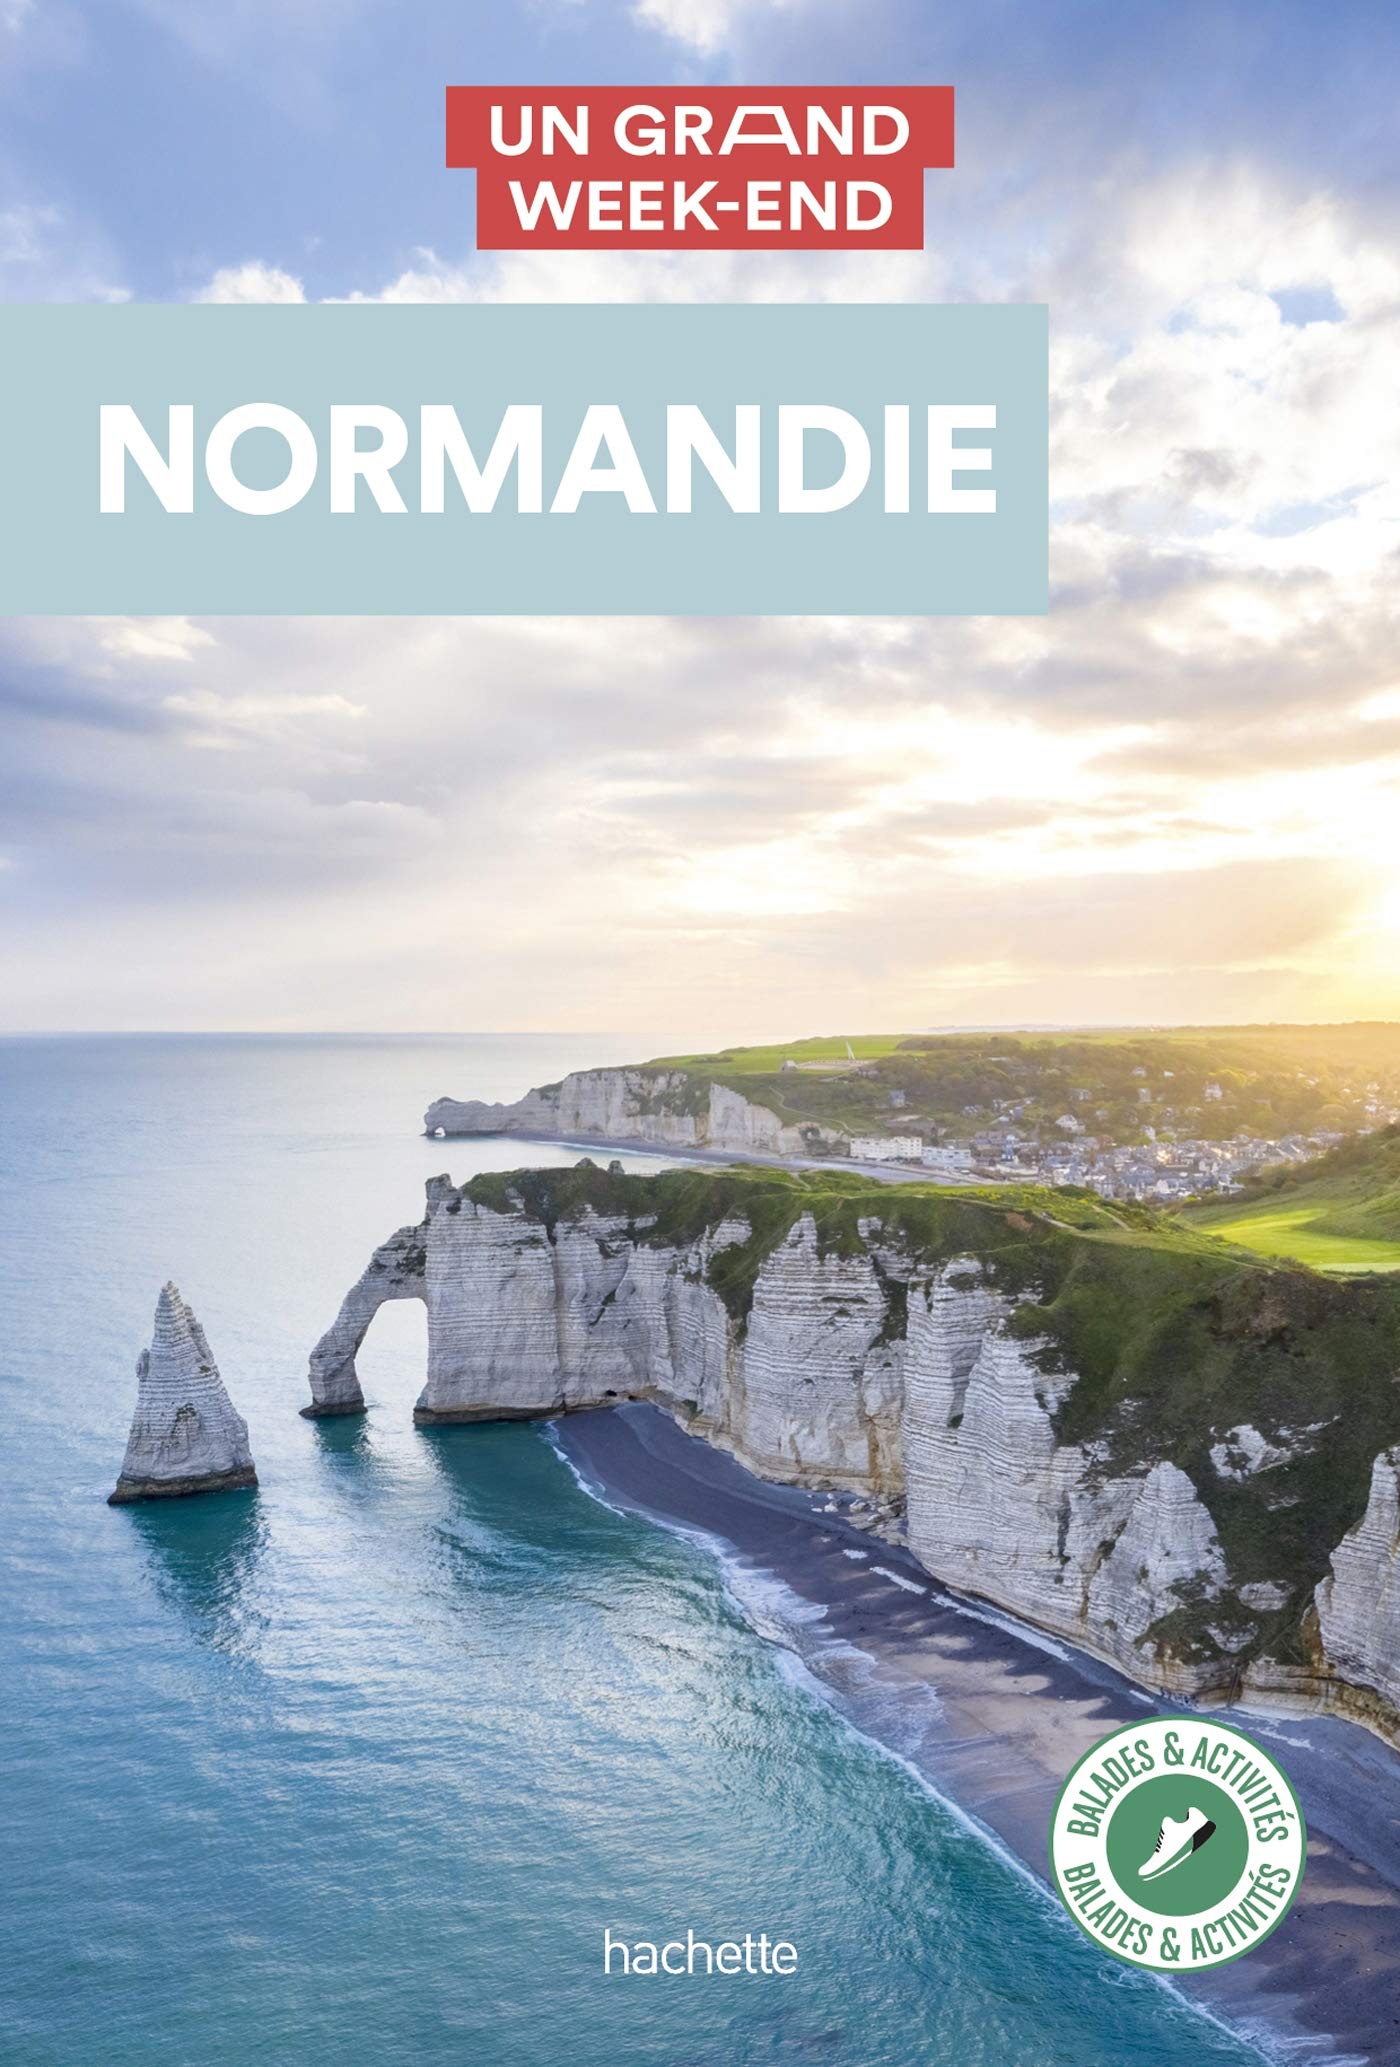 Normandie Guide Un Grand Week-end